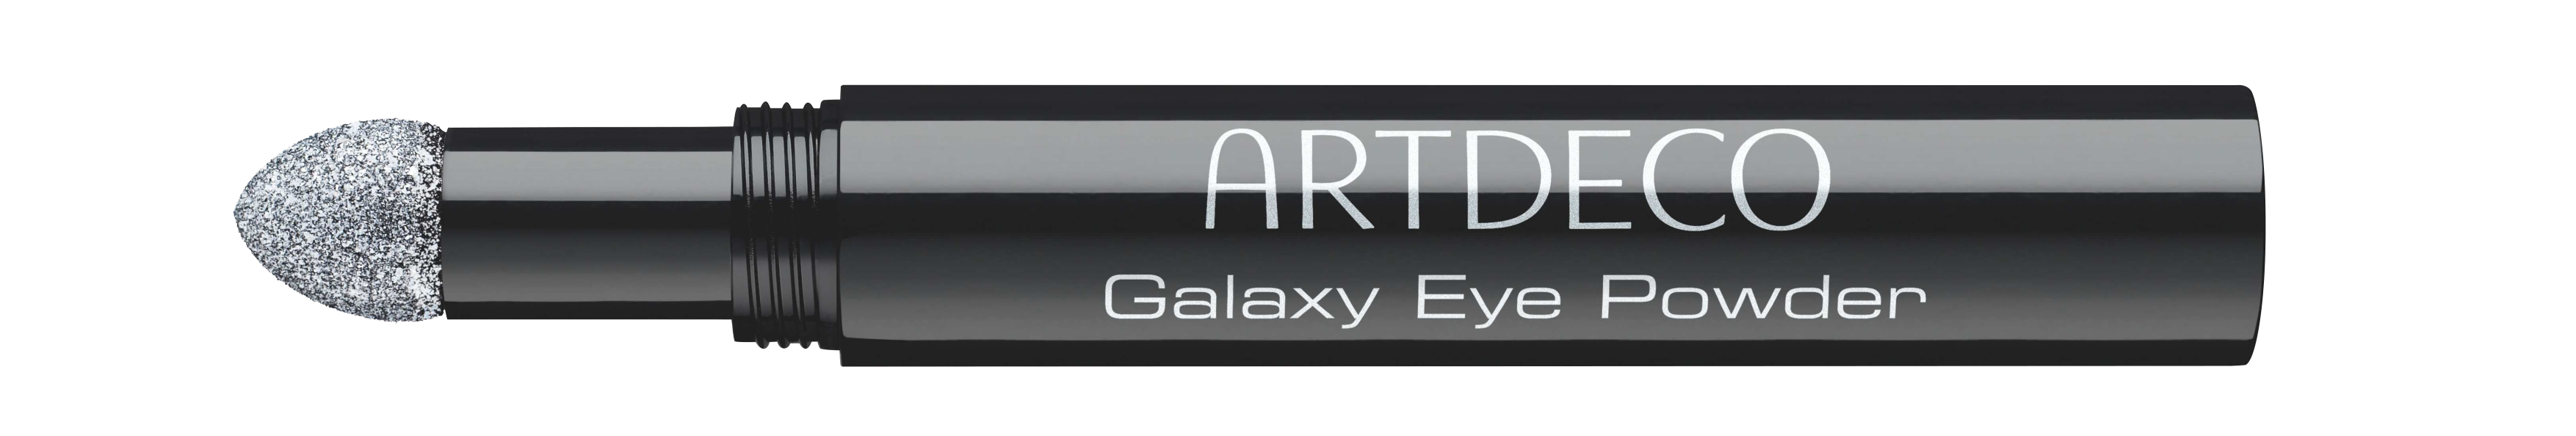 Artdeco Galaxy Eye Powder